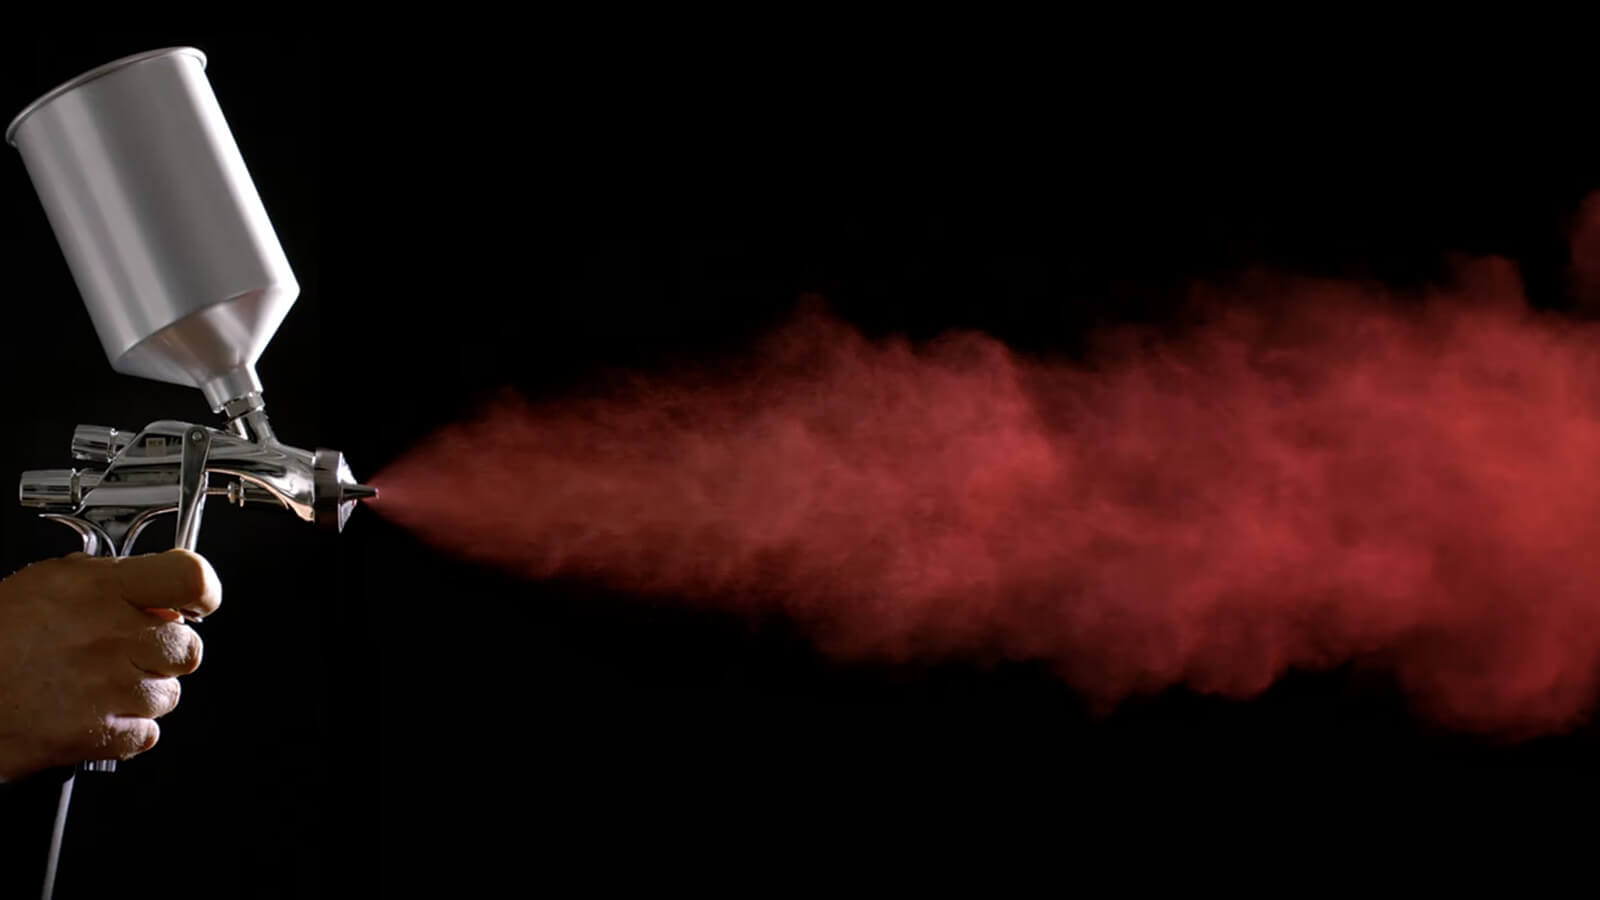 Hand holding spray gun shoots cloud of fine red mist against a dark background